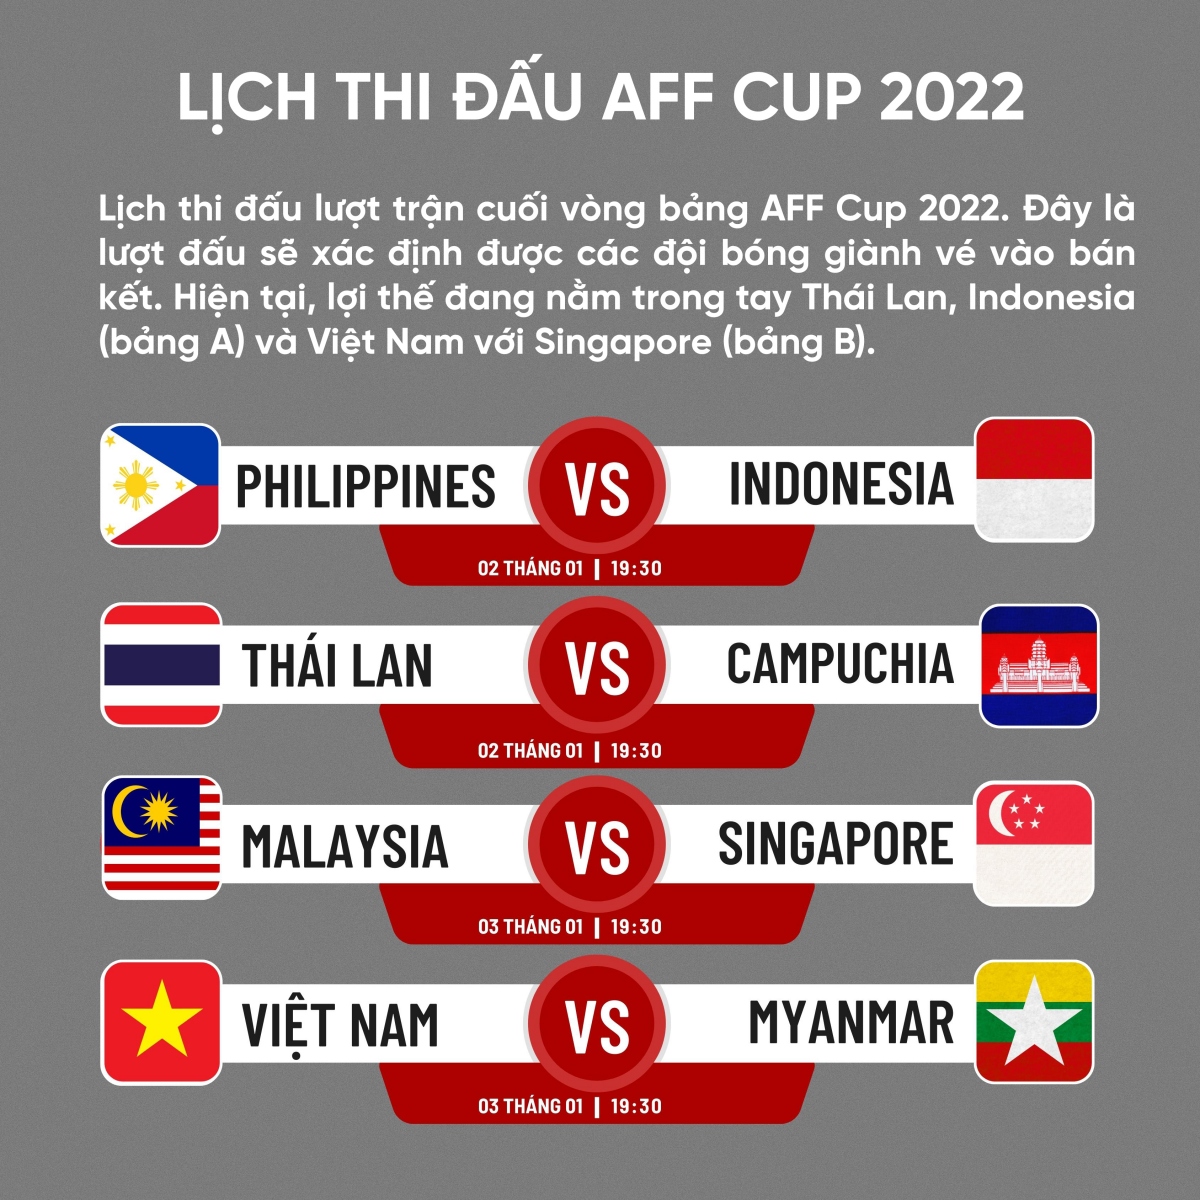 Lịch thi đấu lượt trận cuối AFF Cup 2022: Khúc cua quyết định - Ảnh 1.